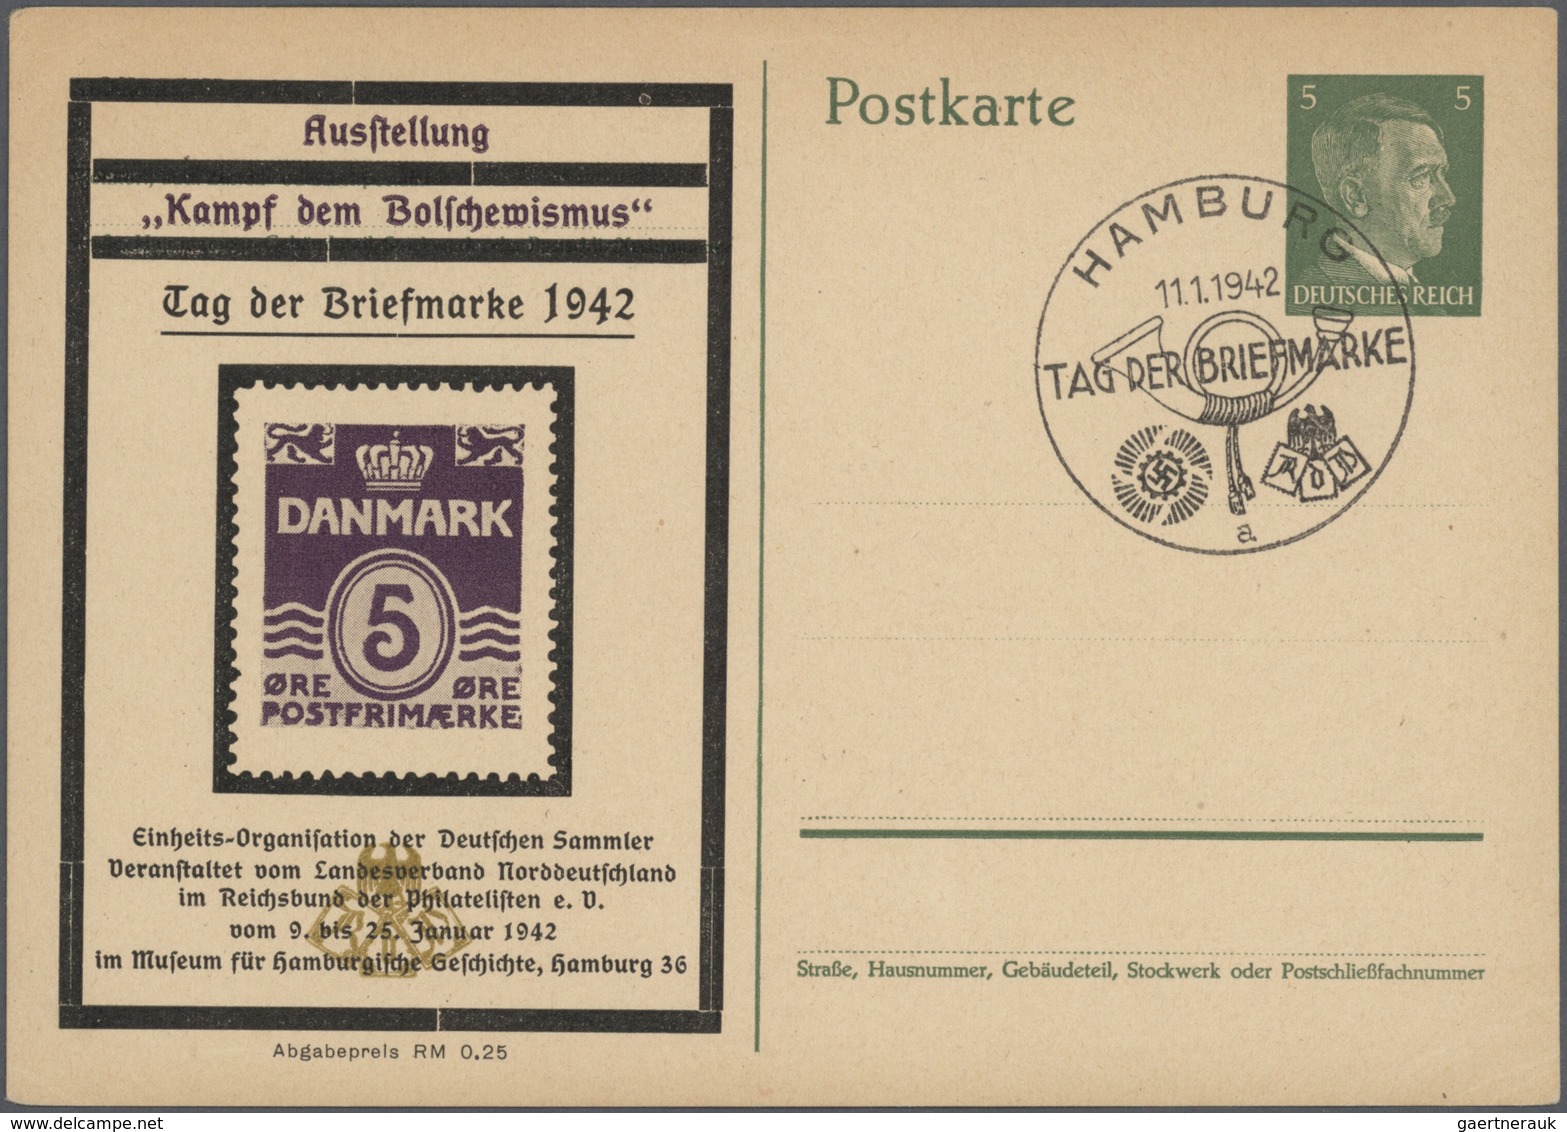 31797 Deutsches Reich - Privatganzsachen: 1933/1942, sehr umfangreiche, ungebrauchte und gebrauchte (bzw.